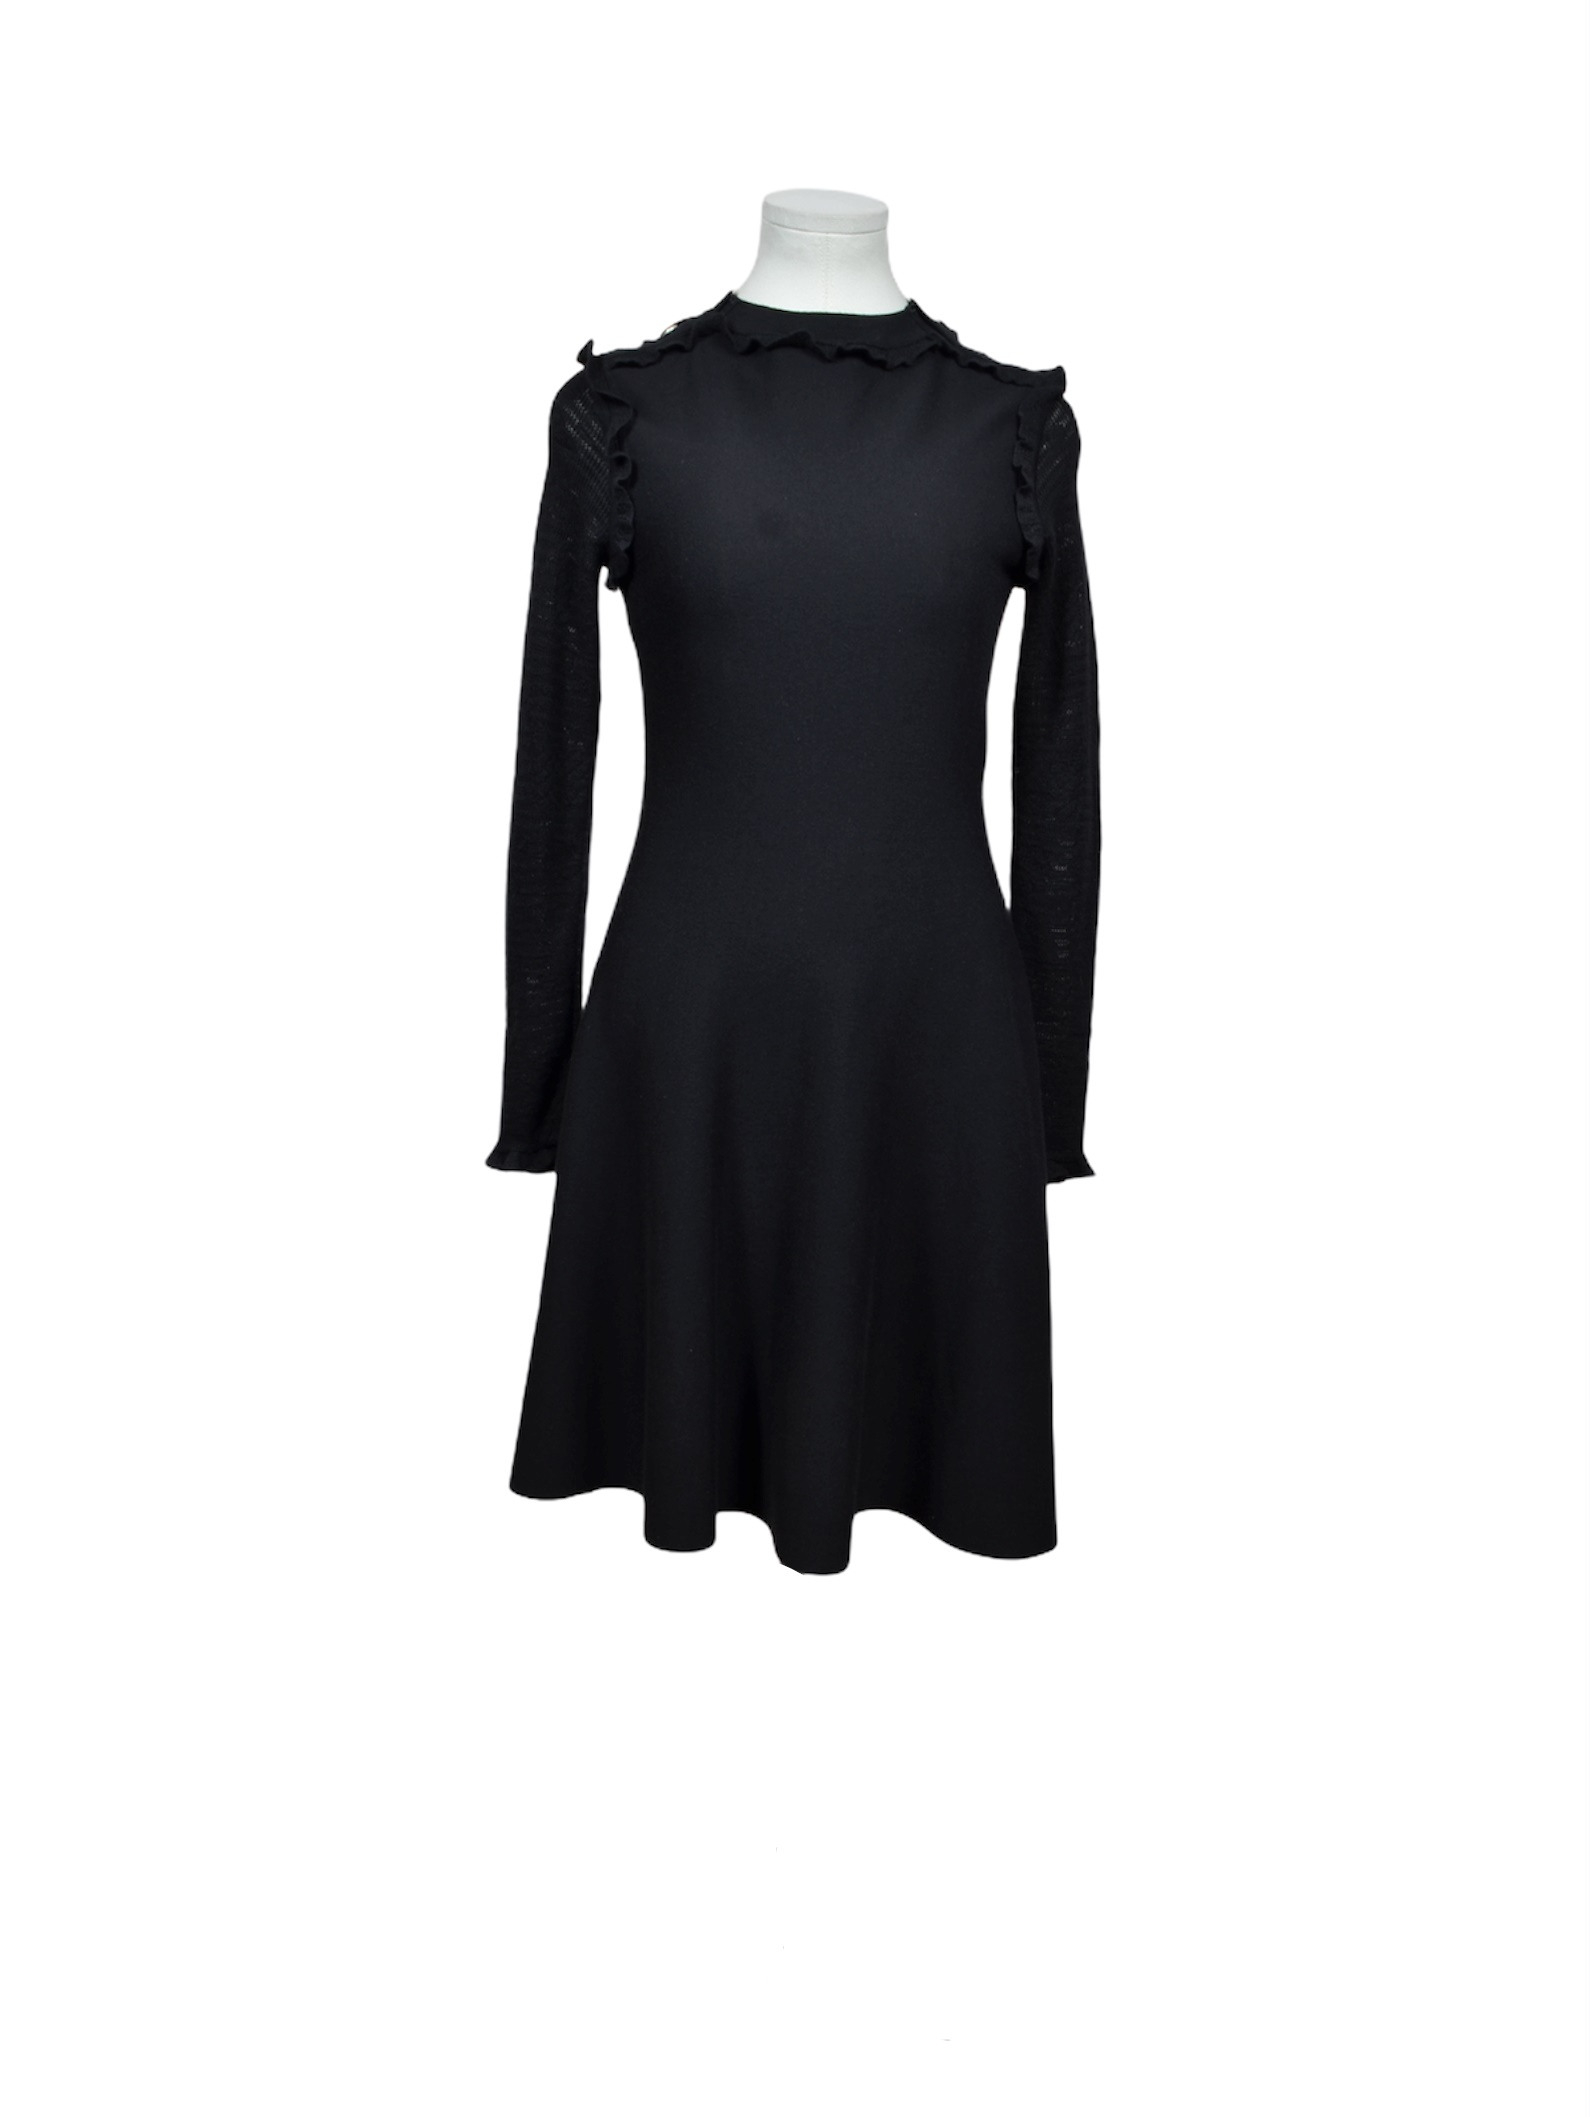 Chanel Kleid Kaschir Seide Schwarz Size 34 Dress Black